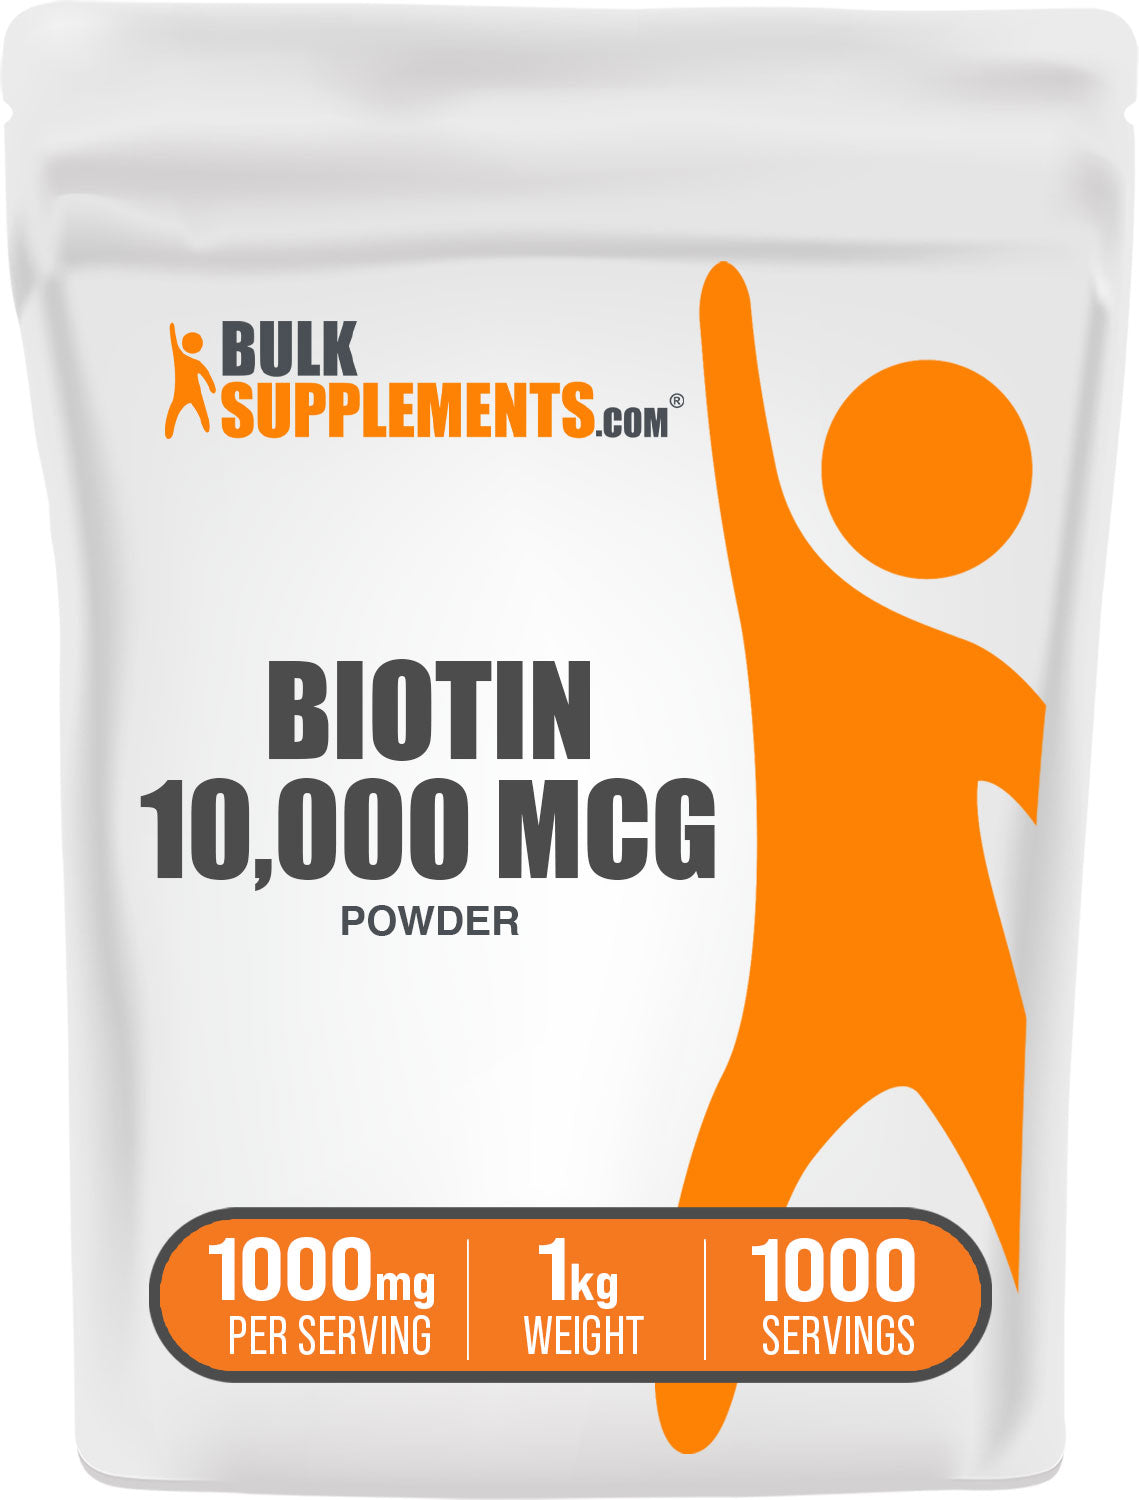 1kg bag of biotin 10000mcg